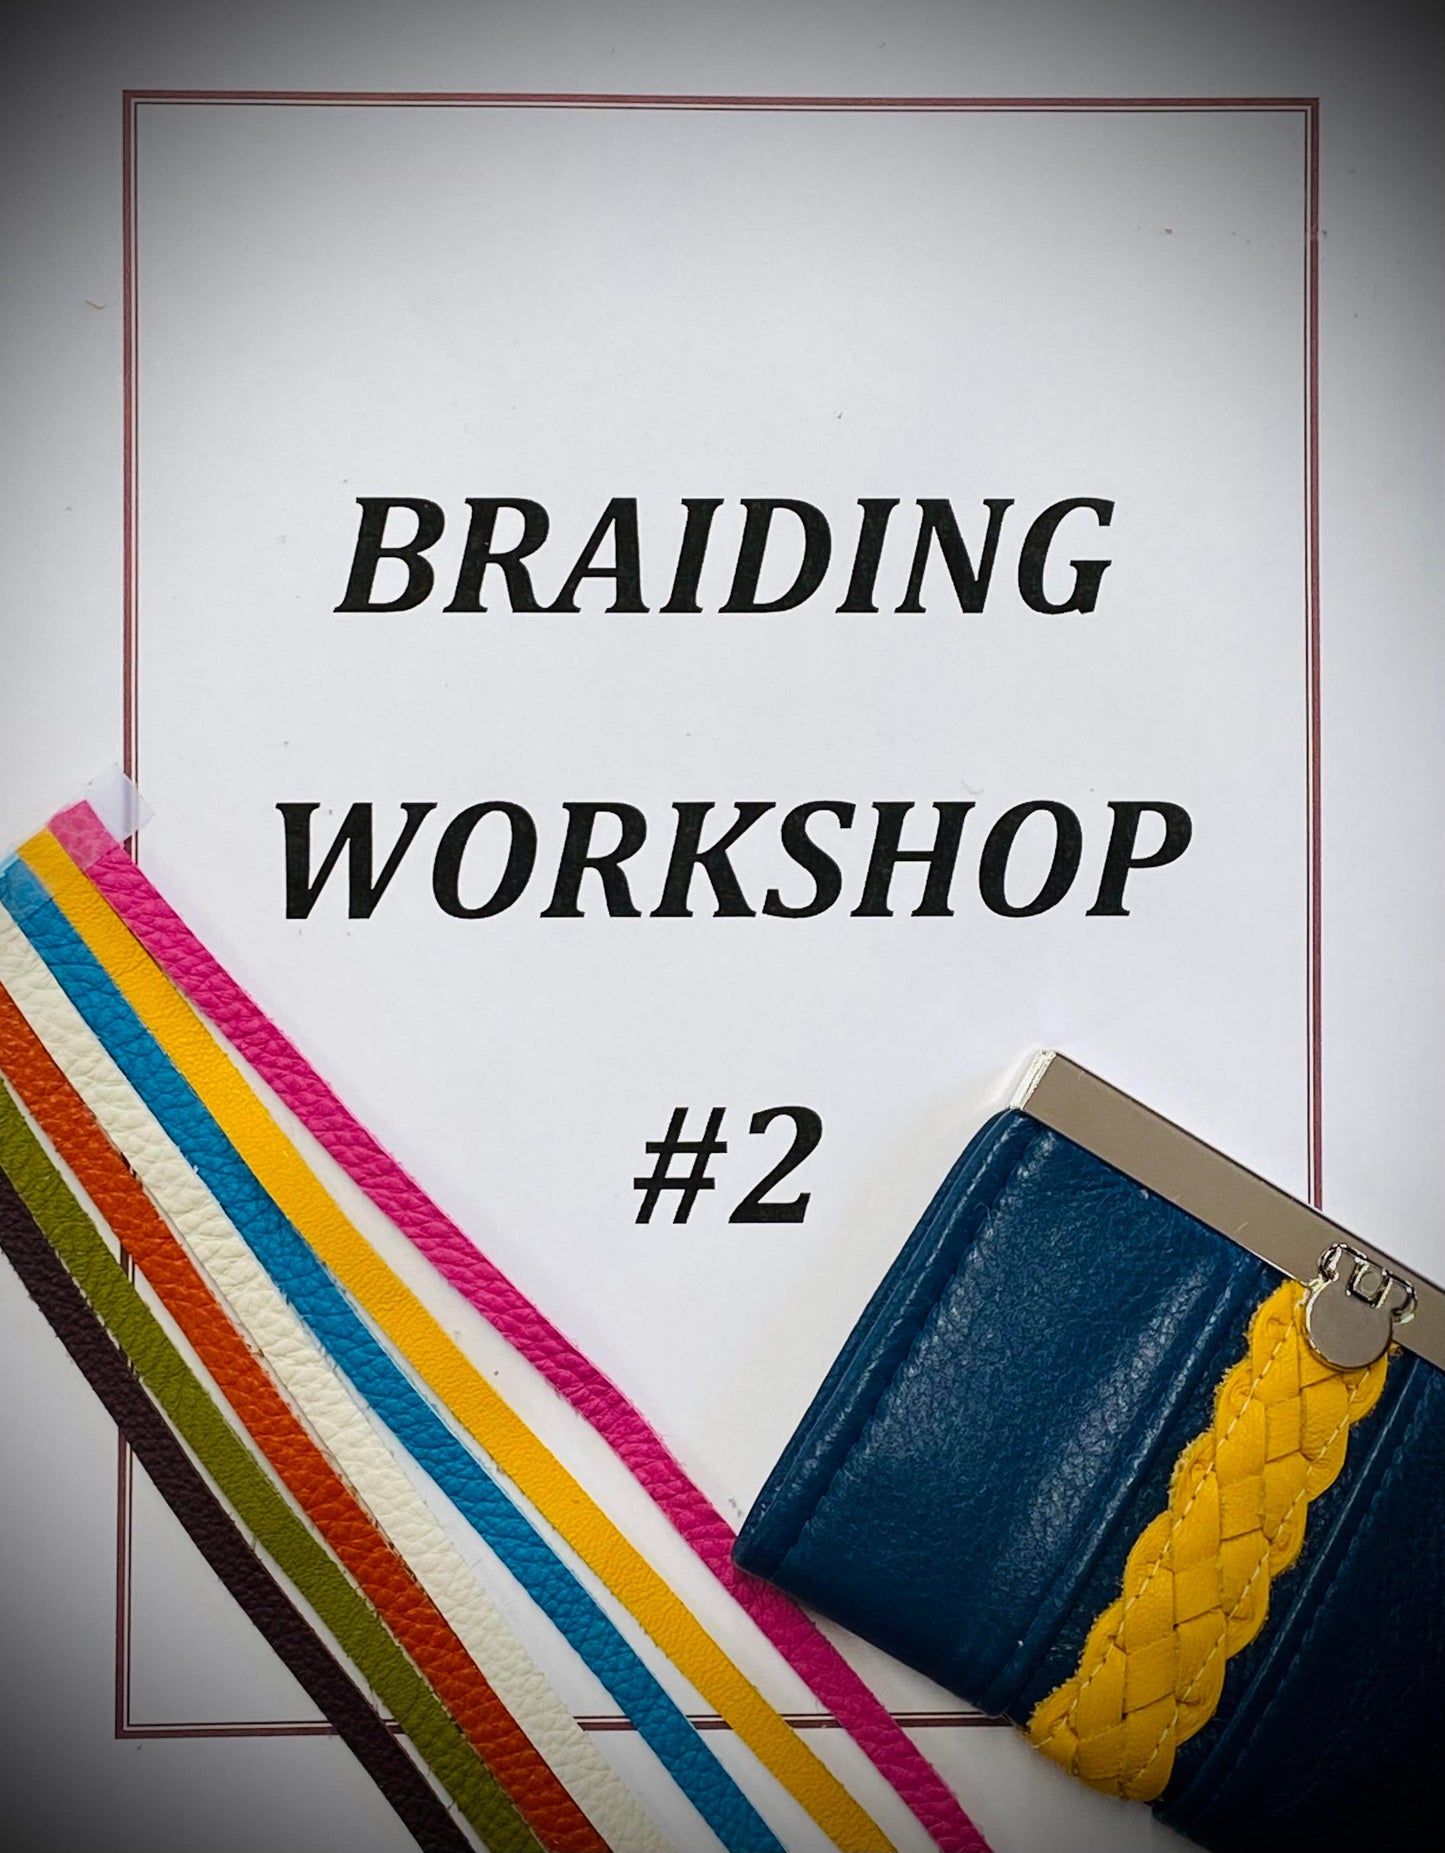 Braiding Techniques Workshop #2- Session 4, Video 4